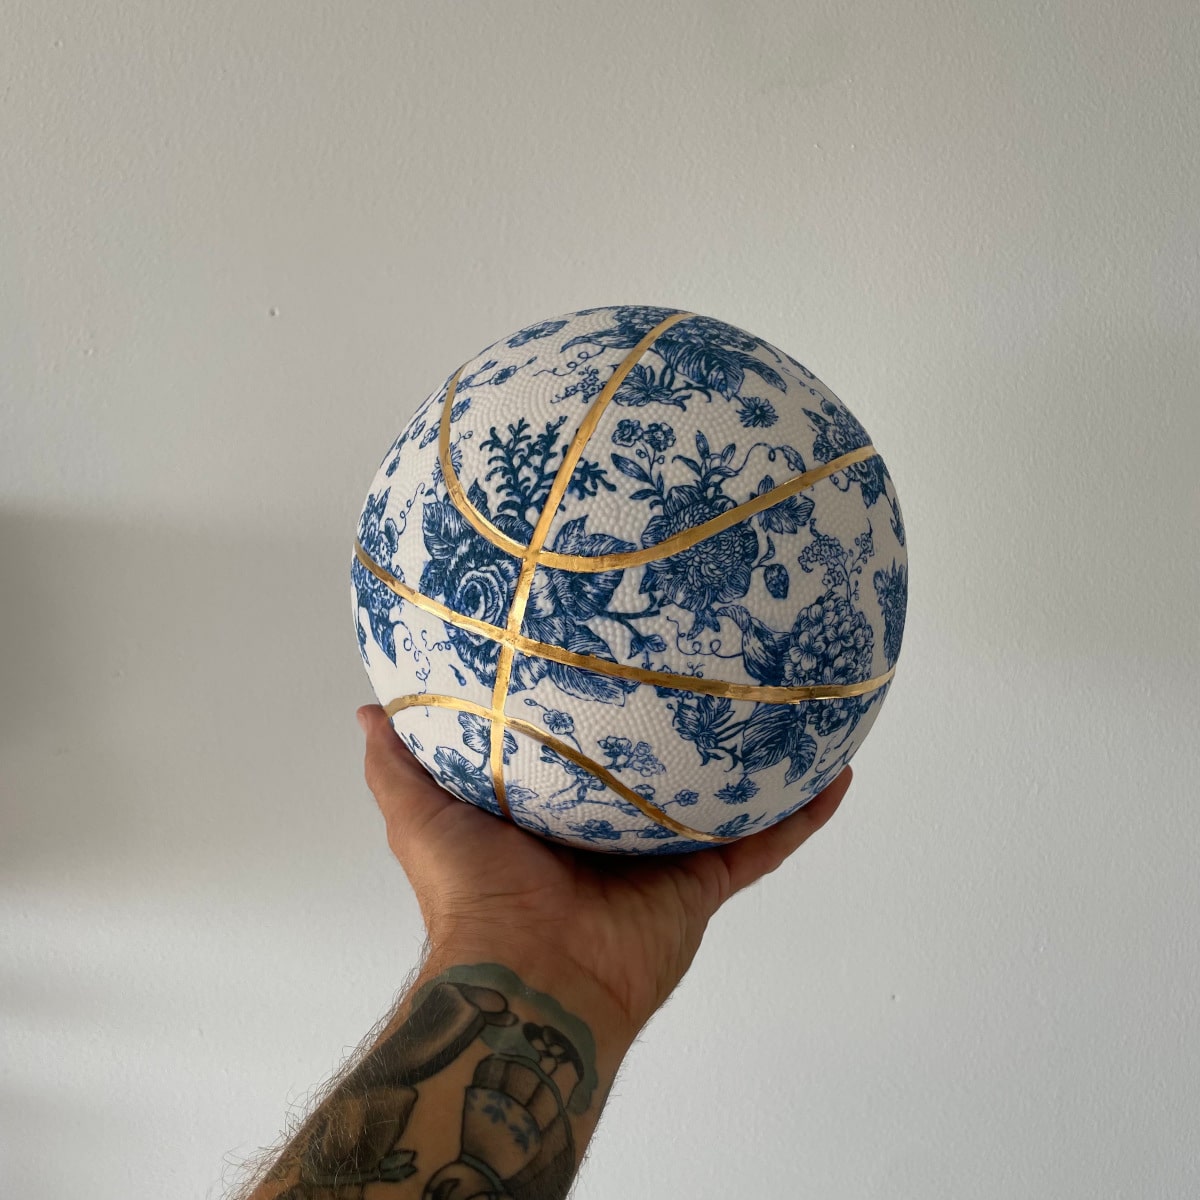 basketball made of porcelain by Brock DeBoer